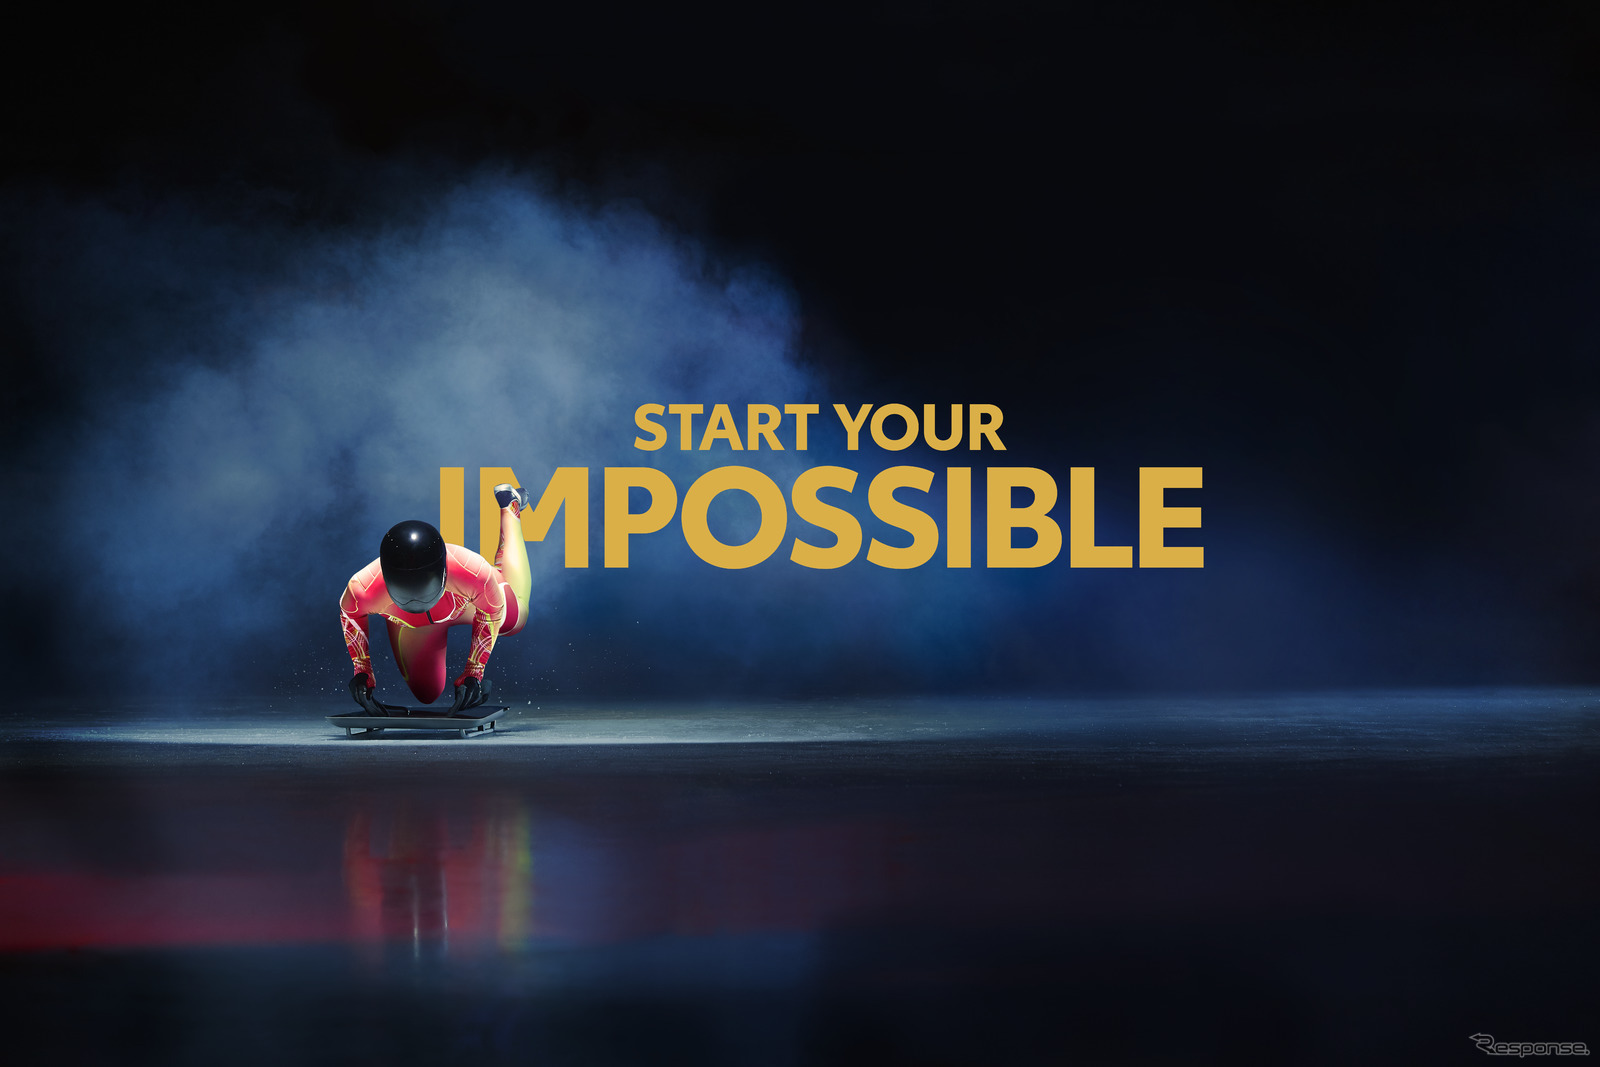 トヨタのグローバル企業チャレンジ「Start Your Impossible」のイメージ